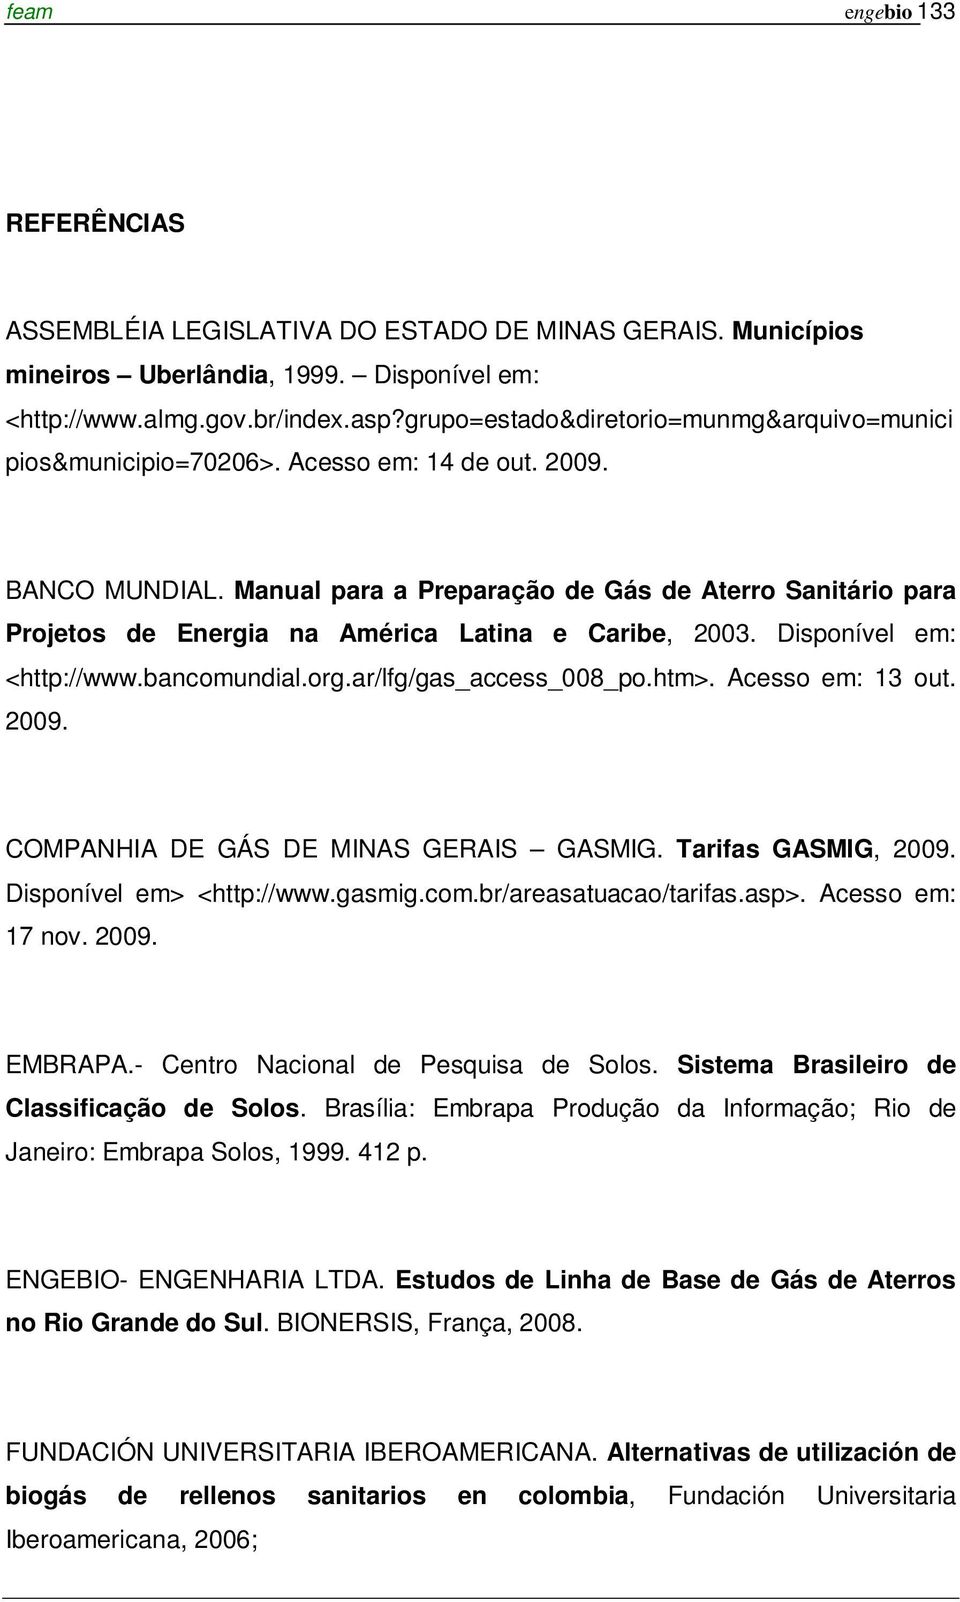 Manual para a Preparação de Gás de Aterro Sanitário para Projetos de Energia na América Latina e Caribe, 2003. Disponível em: <http://www.bancomundial.org.ar/lfg/gas_access_008_po.htm>.